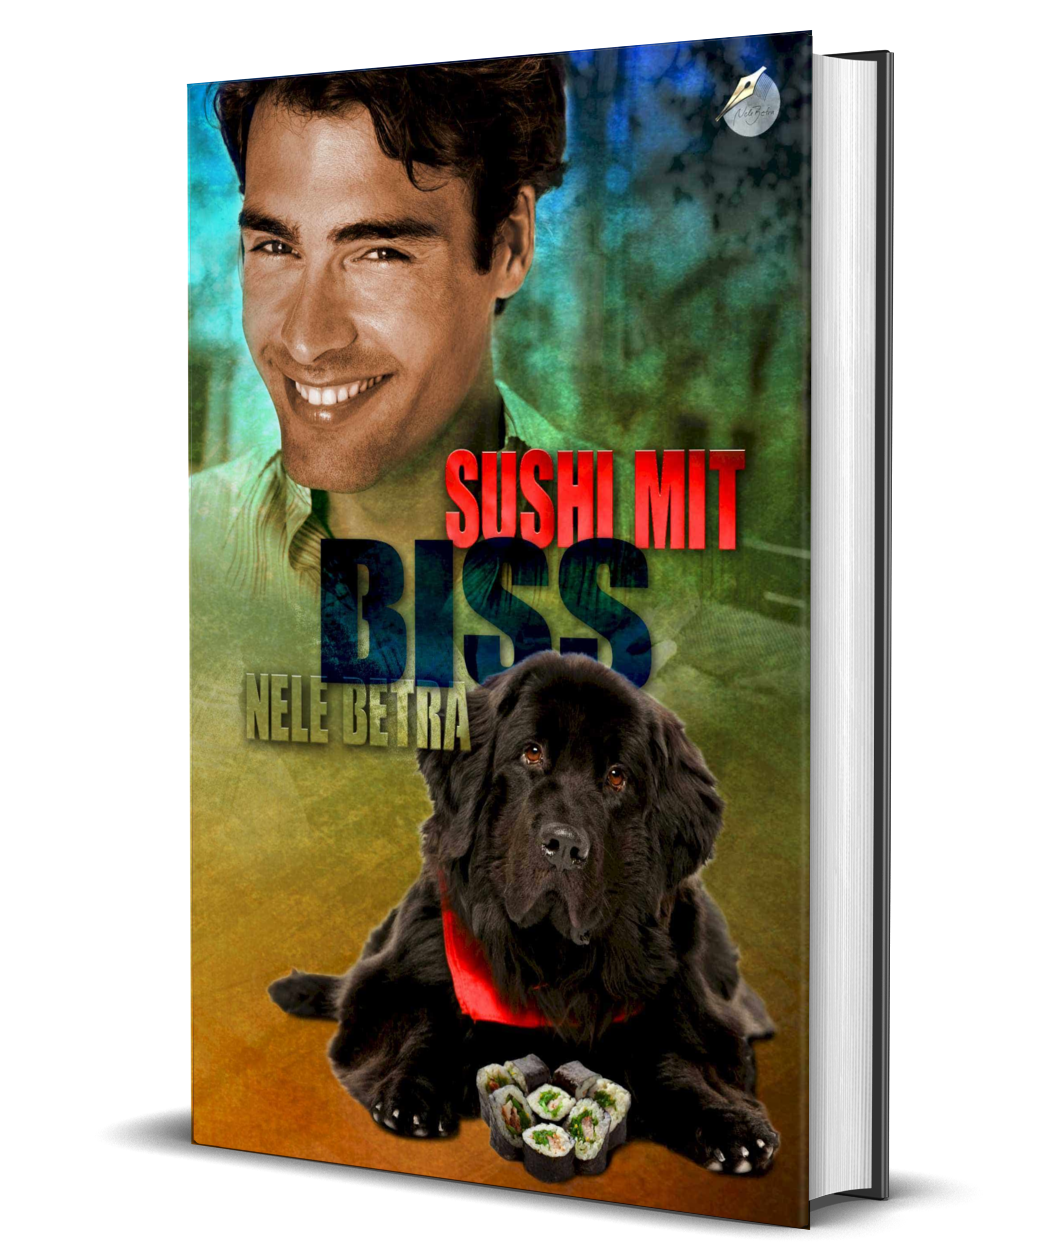 Sushi mit Biss (Hardcover)